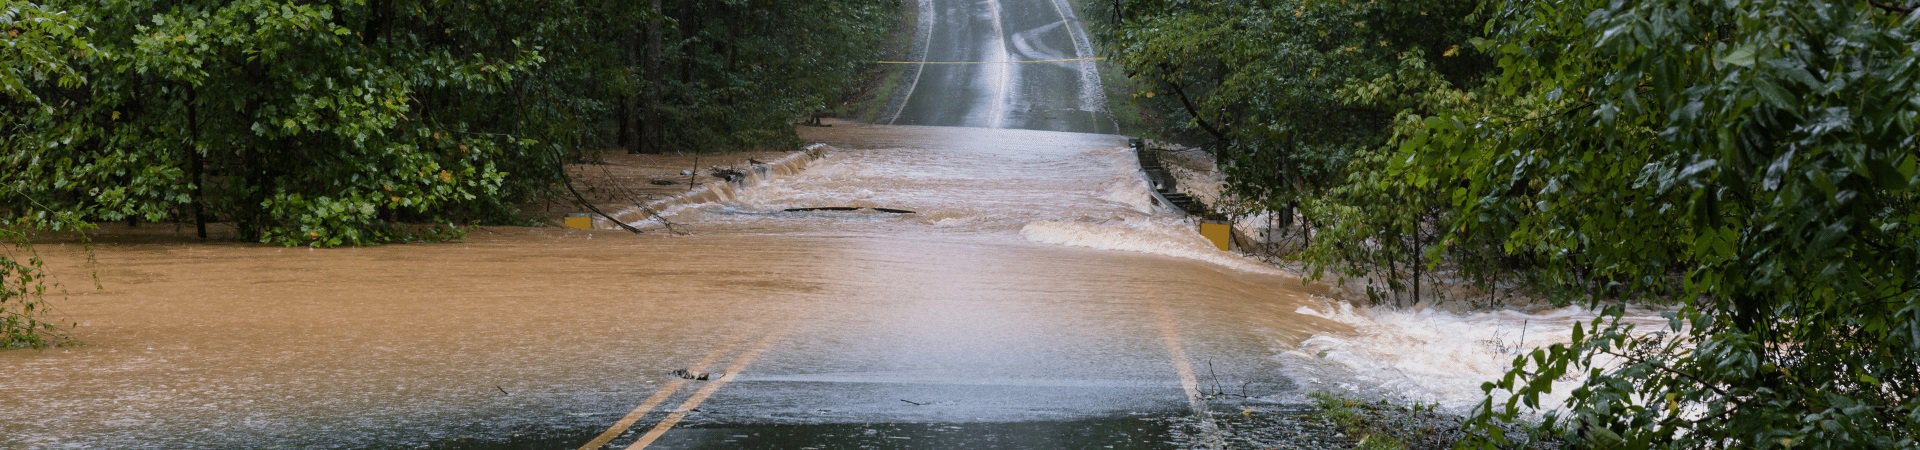 Flood on road